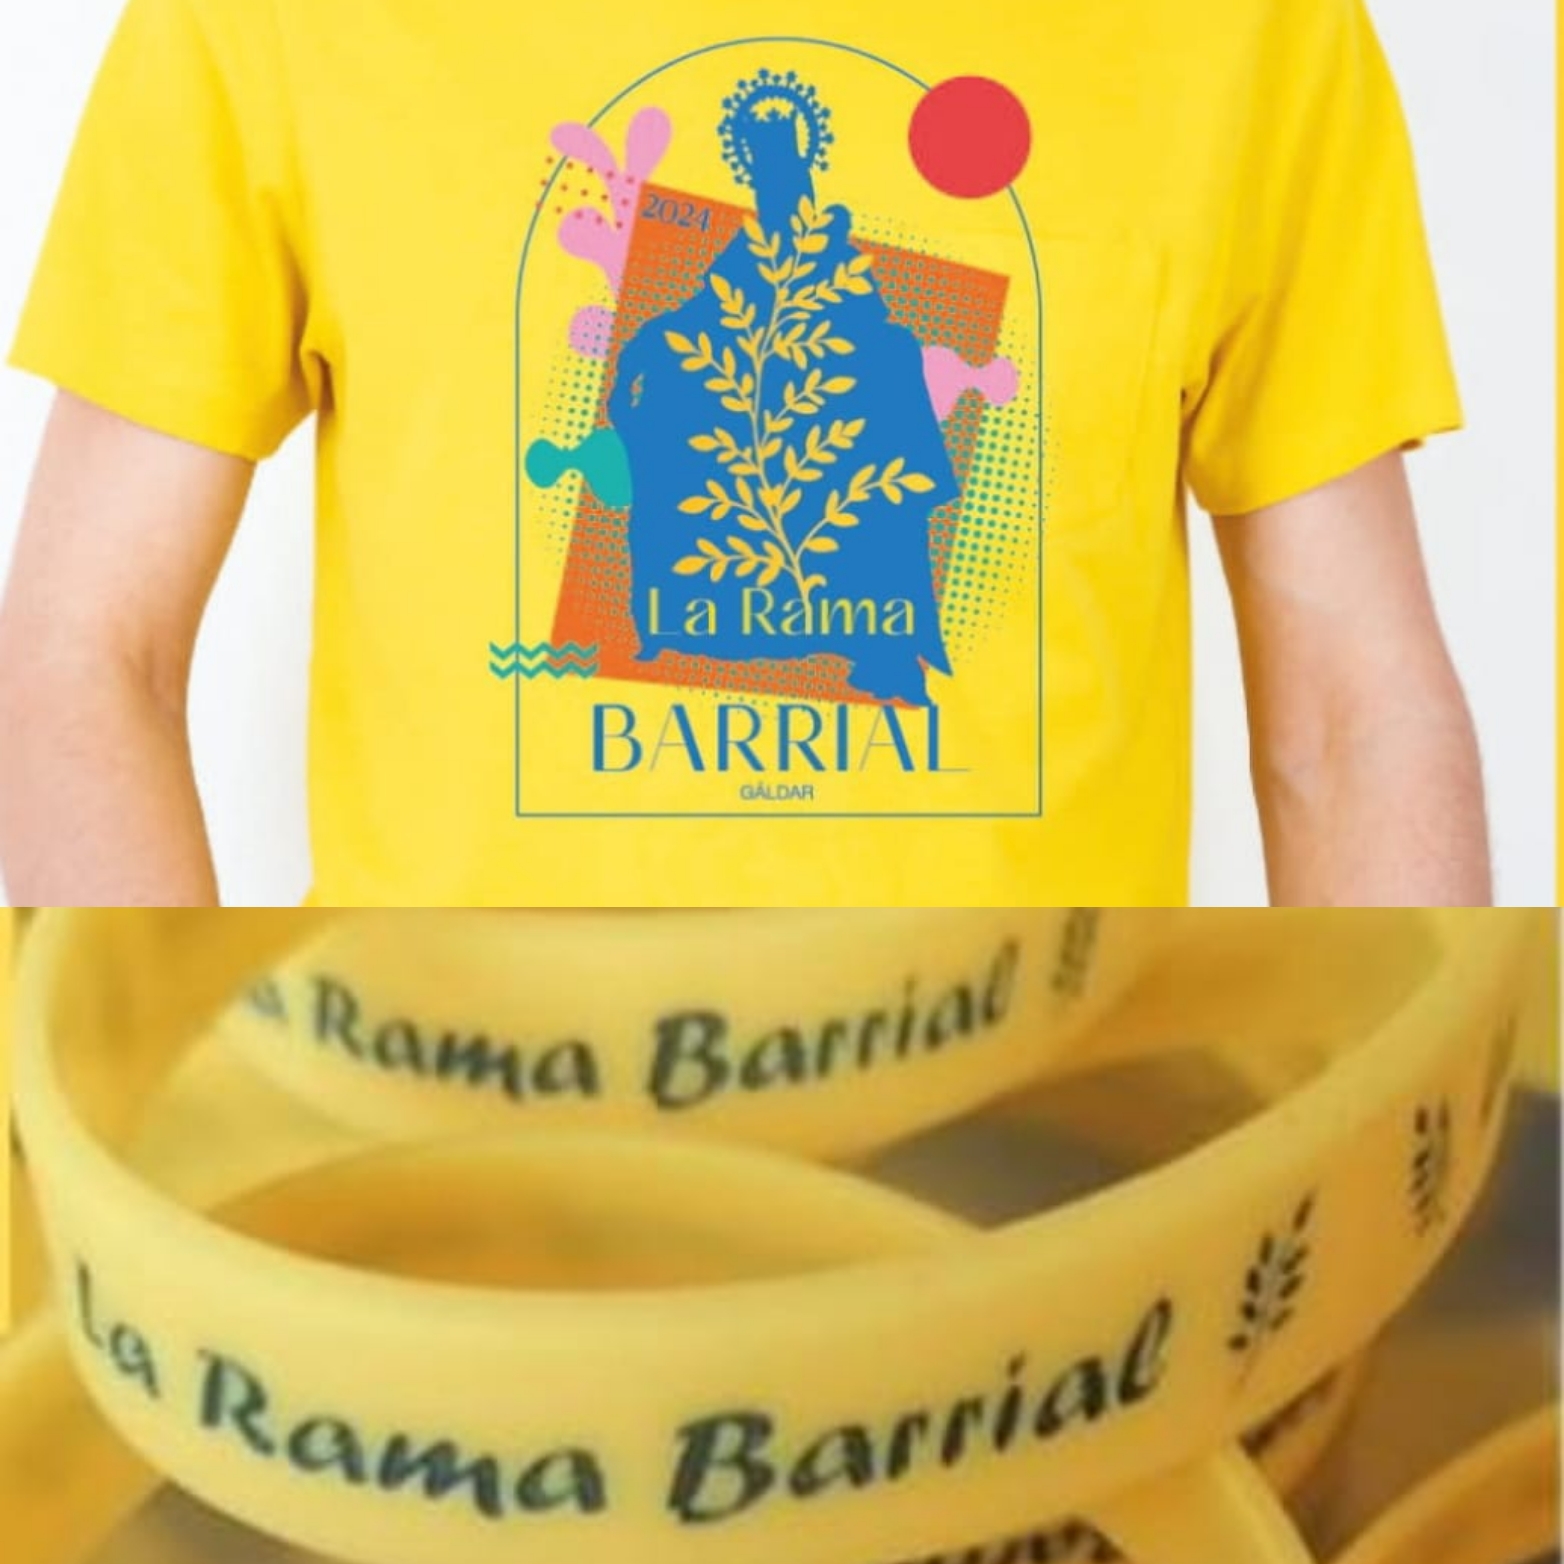 La rama de Barrial 2024 estrenará camiseta y pulsera, diseñadas por Texiade Santana.